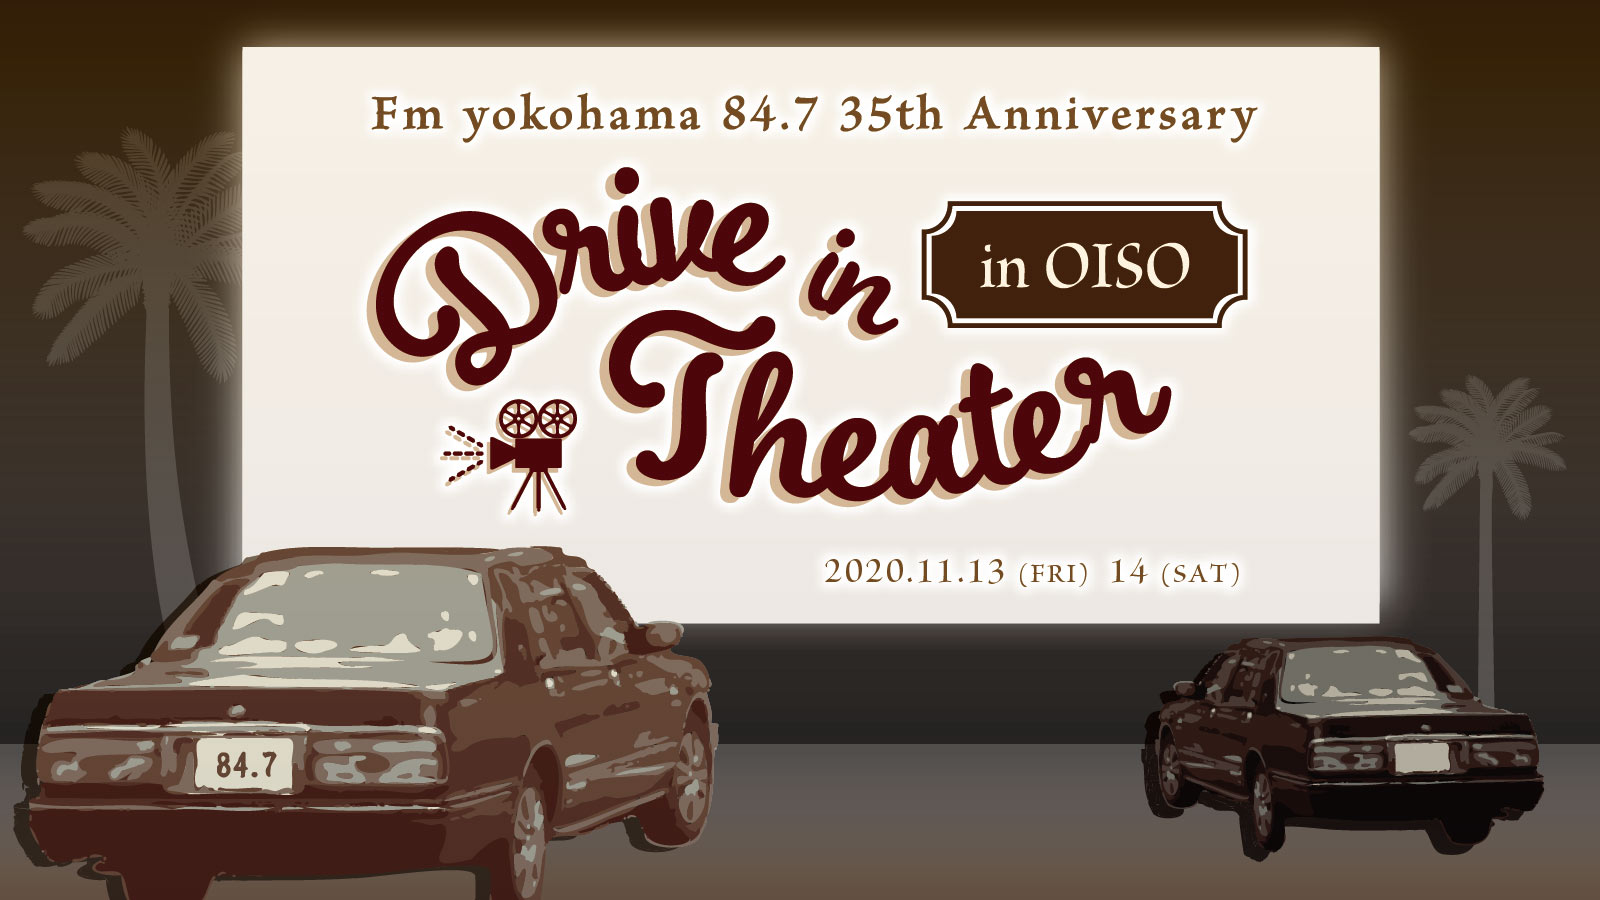 Fmヨコハマdjが選んだおススメ映画を日本最大のスクリーンで鑑賞できる Drive In Theater In Oiso 開催決定 チケットは9月25日発売開始 Fmヨコハマのプレスリリース